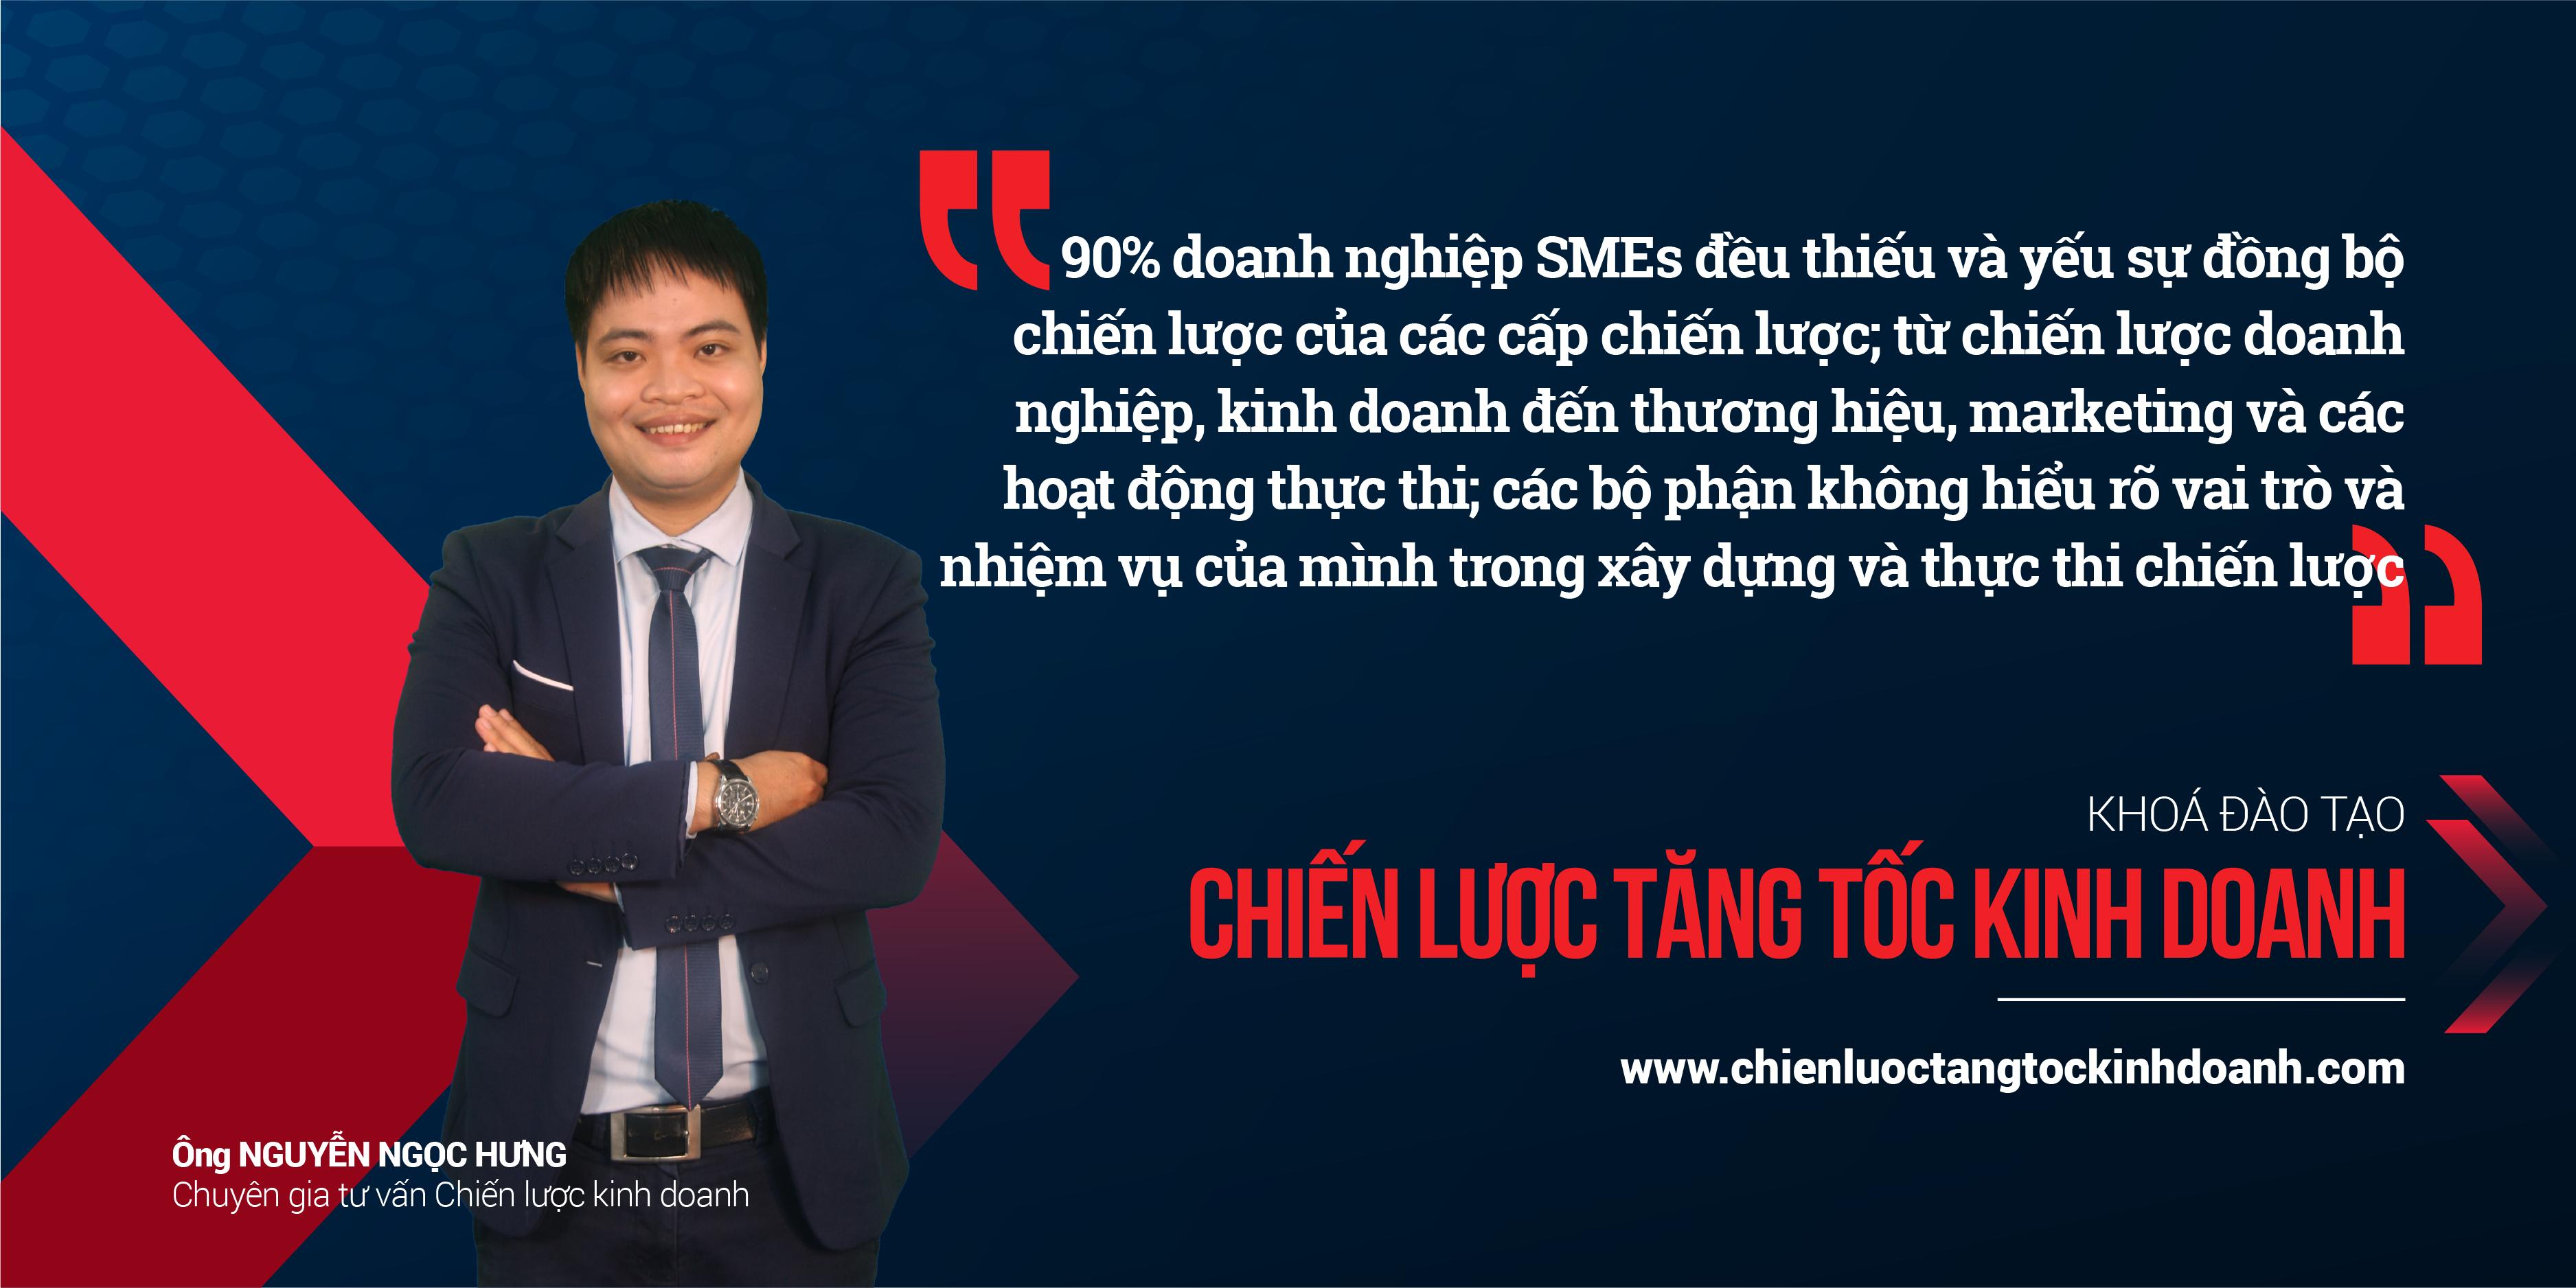 Chuyên gia Nguyễn Ngọc Hưng - Chiến lược tăng tốc kinh doanh GHB 